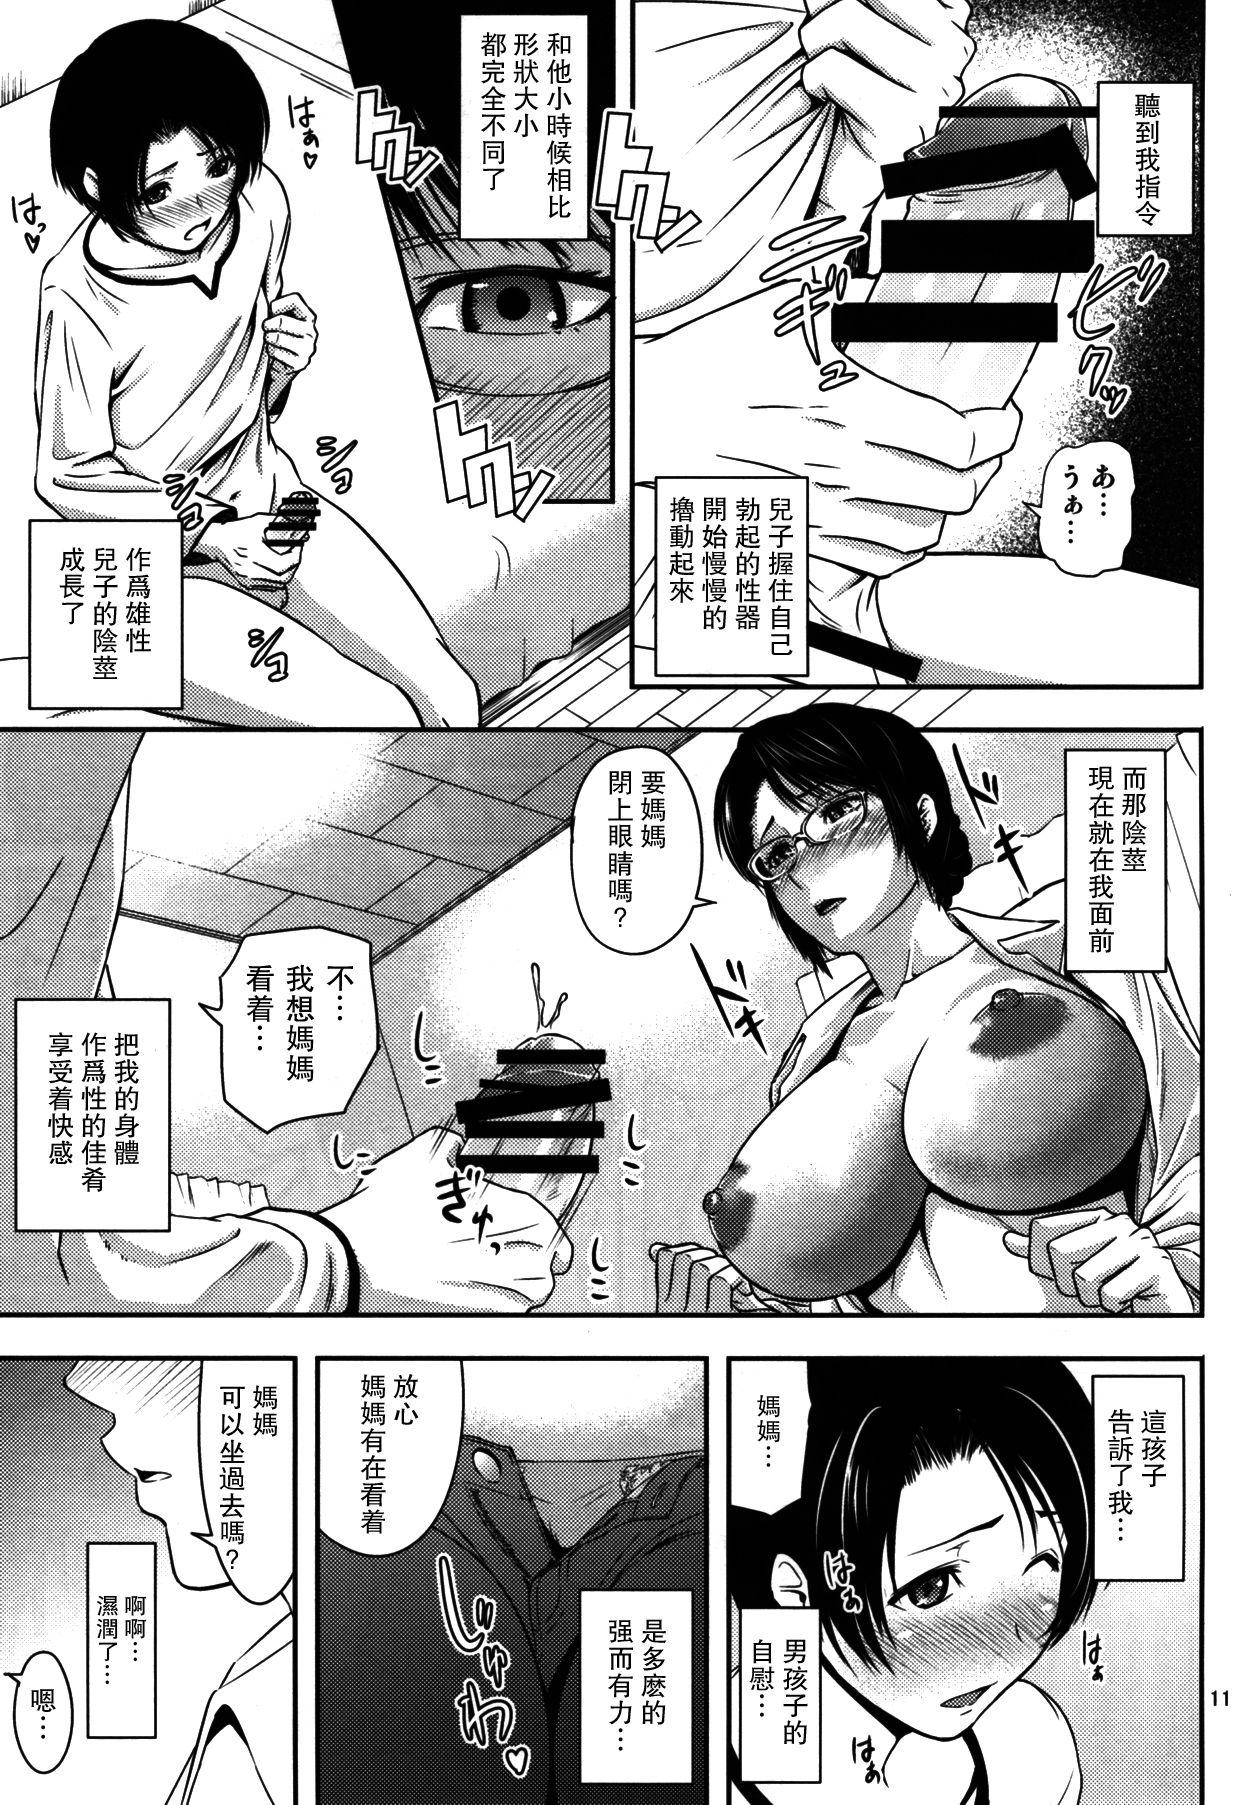 Solo Female Boketsu o Horu 18 - Original Flaca - Page 10